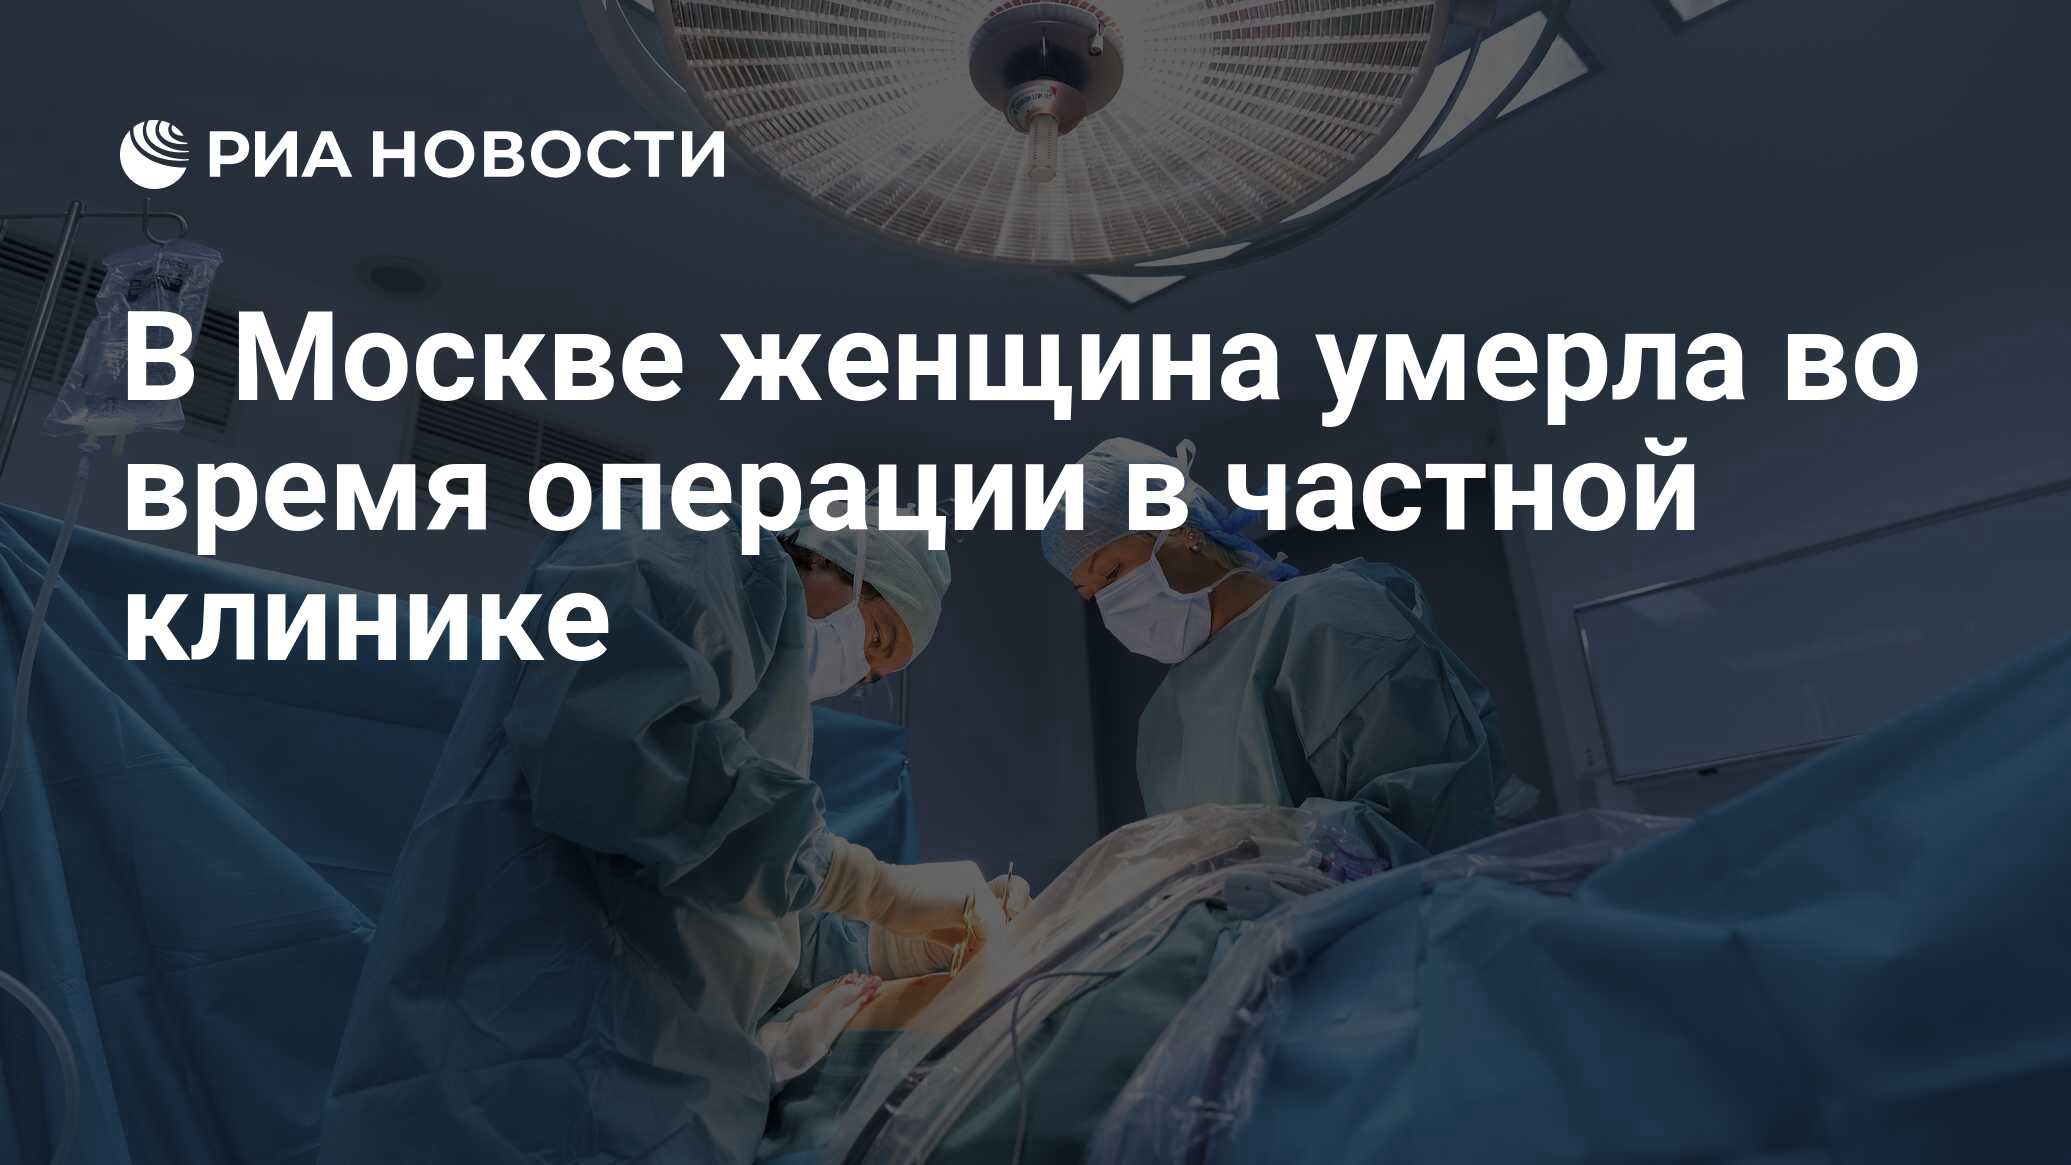 Оперативное время на операцию. Паразиты съели печень и сердце пациентки Российской больницы.